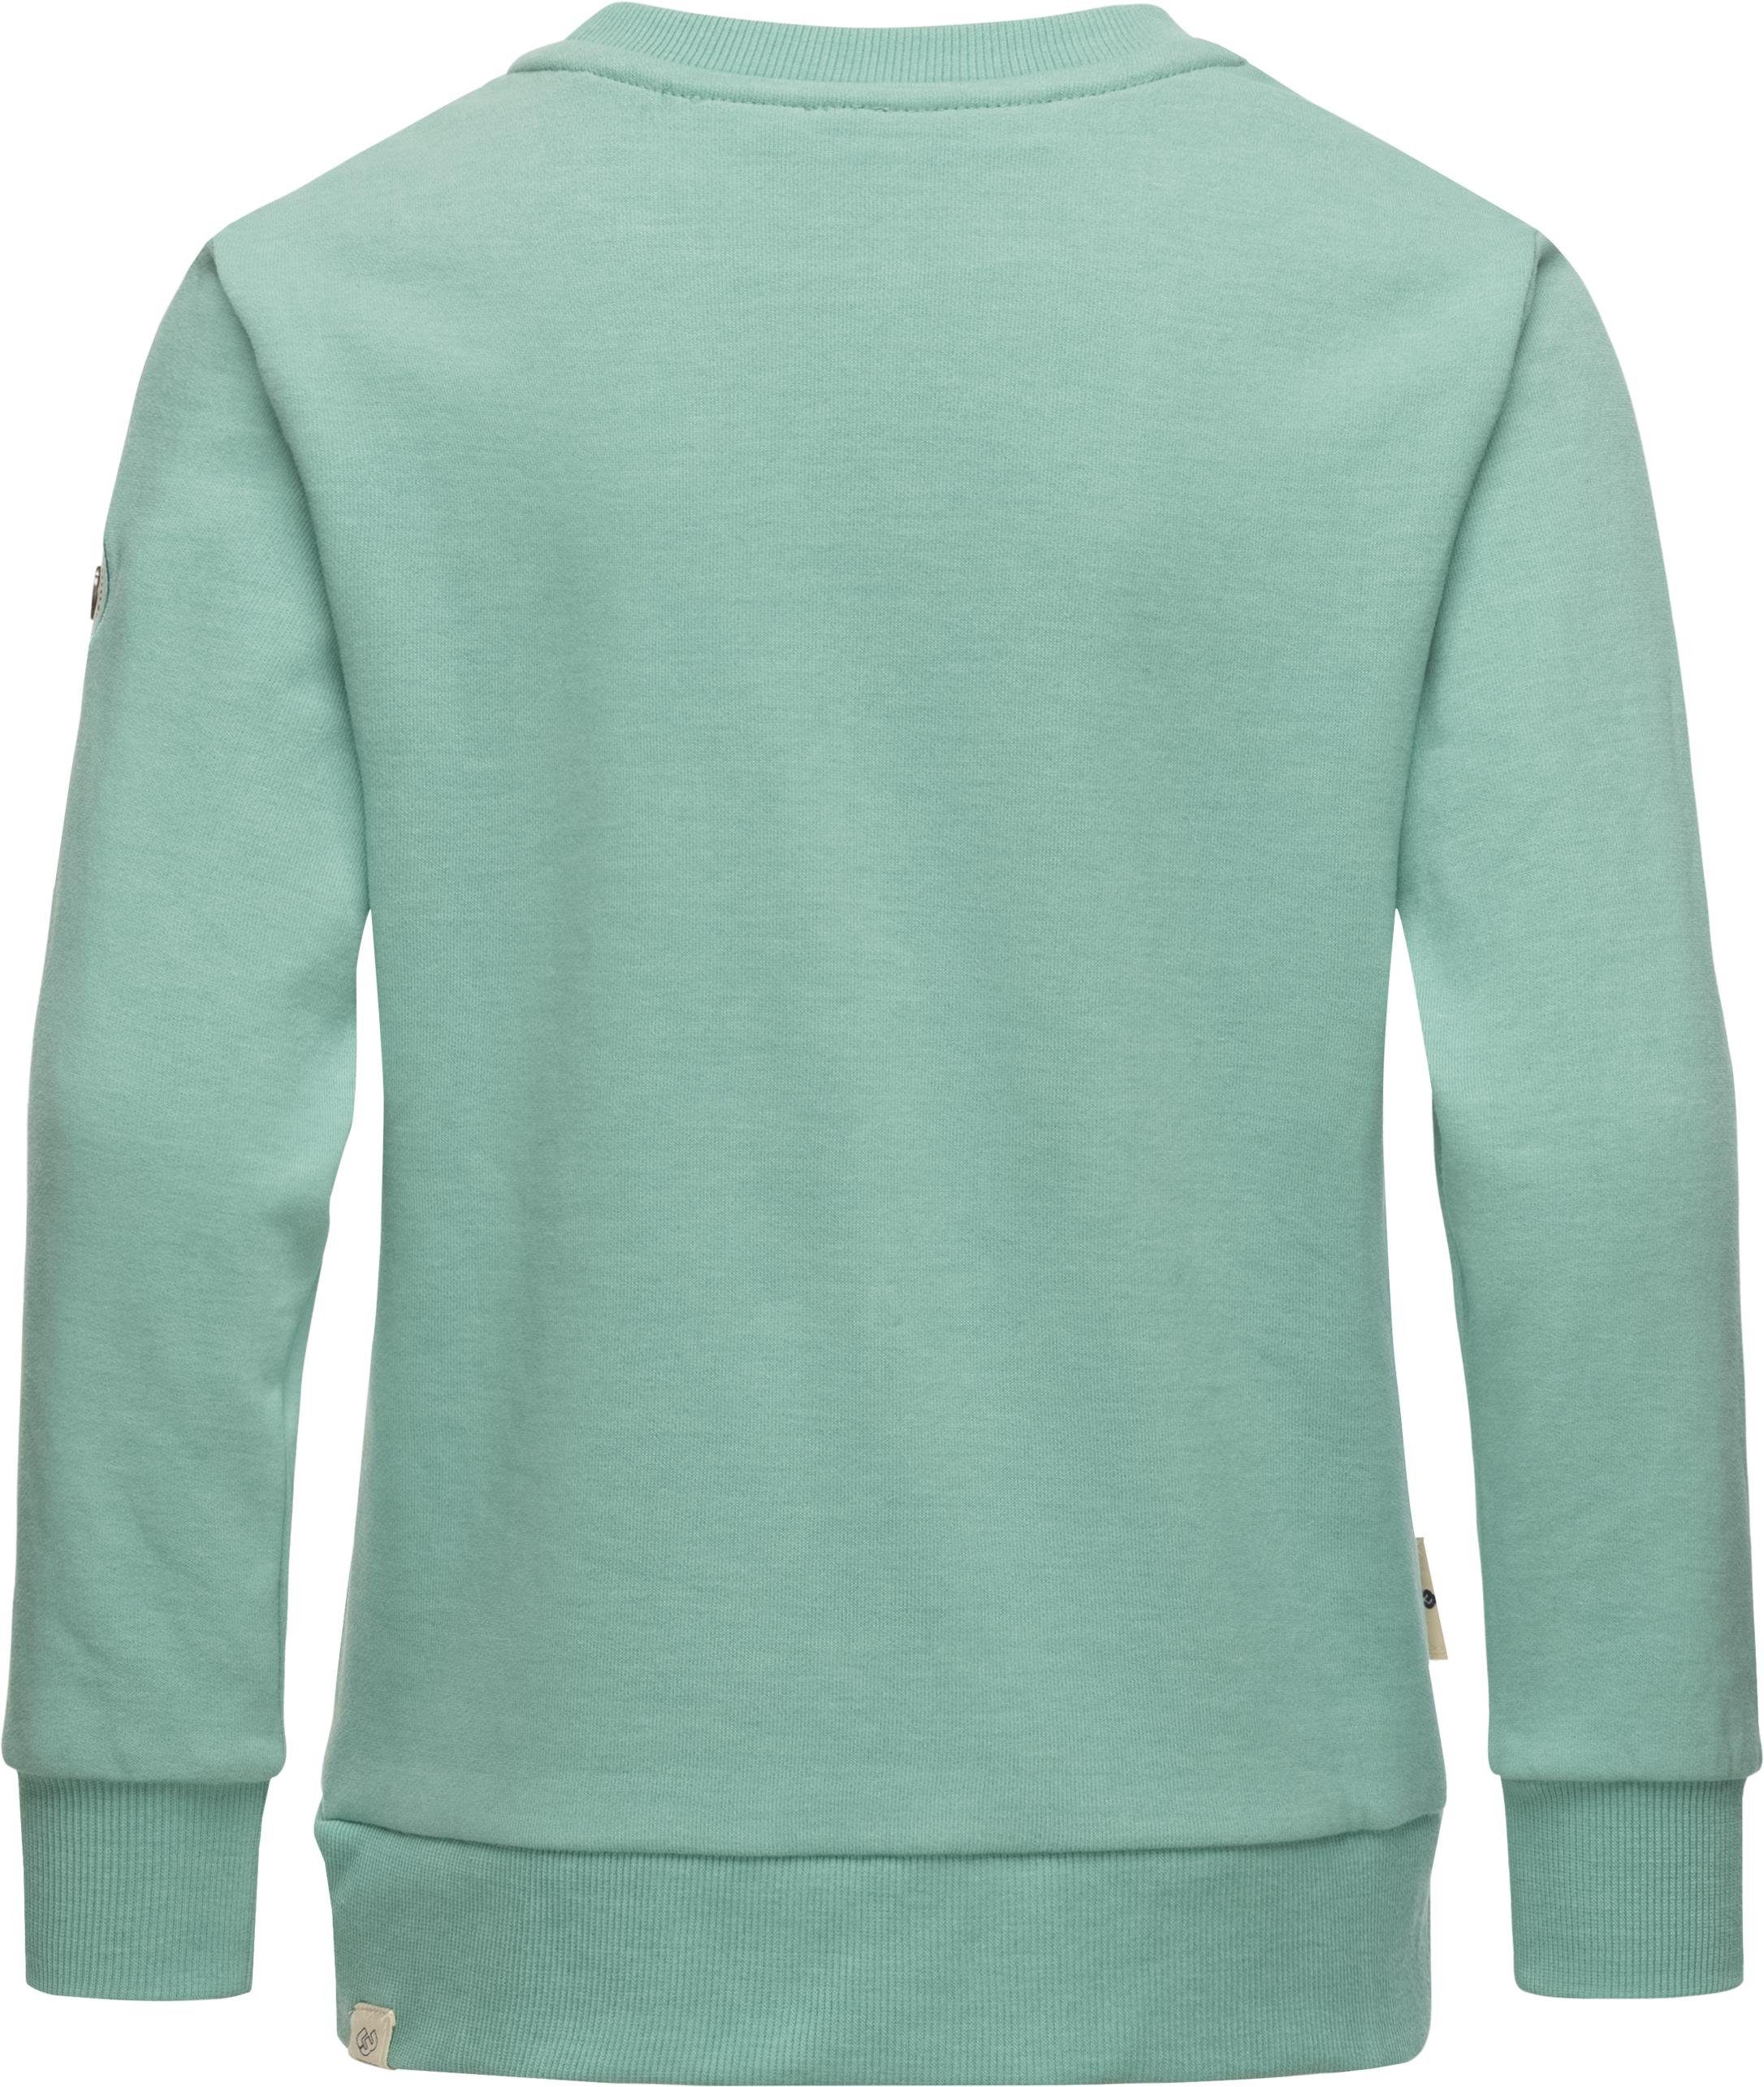 Mädchen mit Print Organic Print Ragwear blau coolem Evka Sweatshirt stylisches Sweater